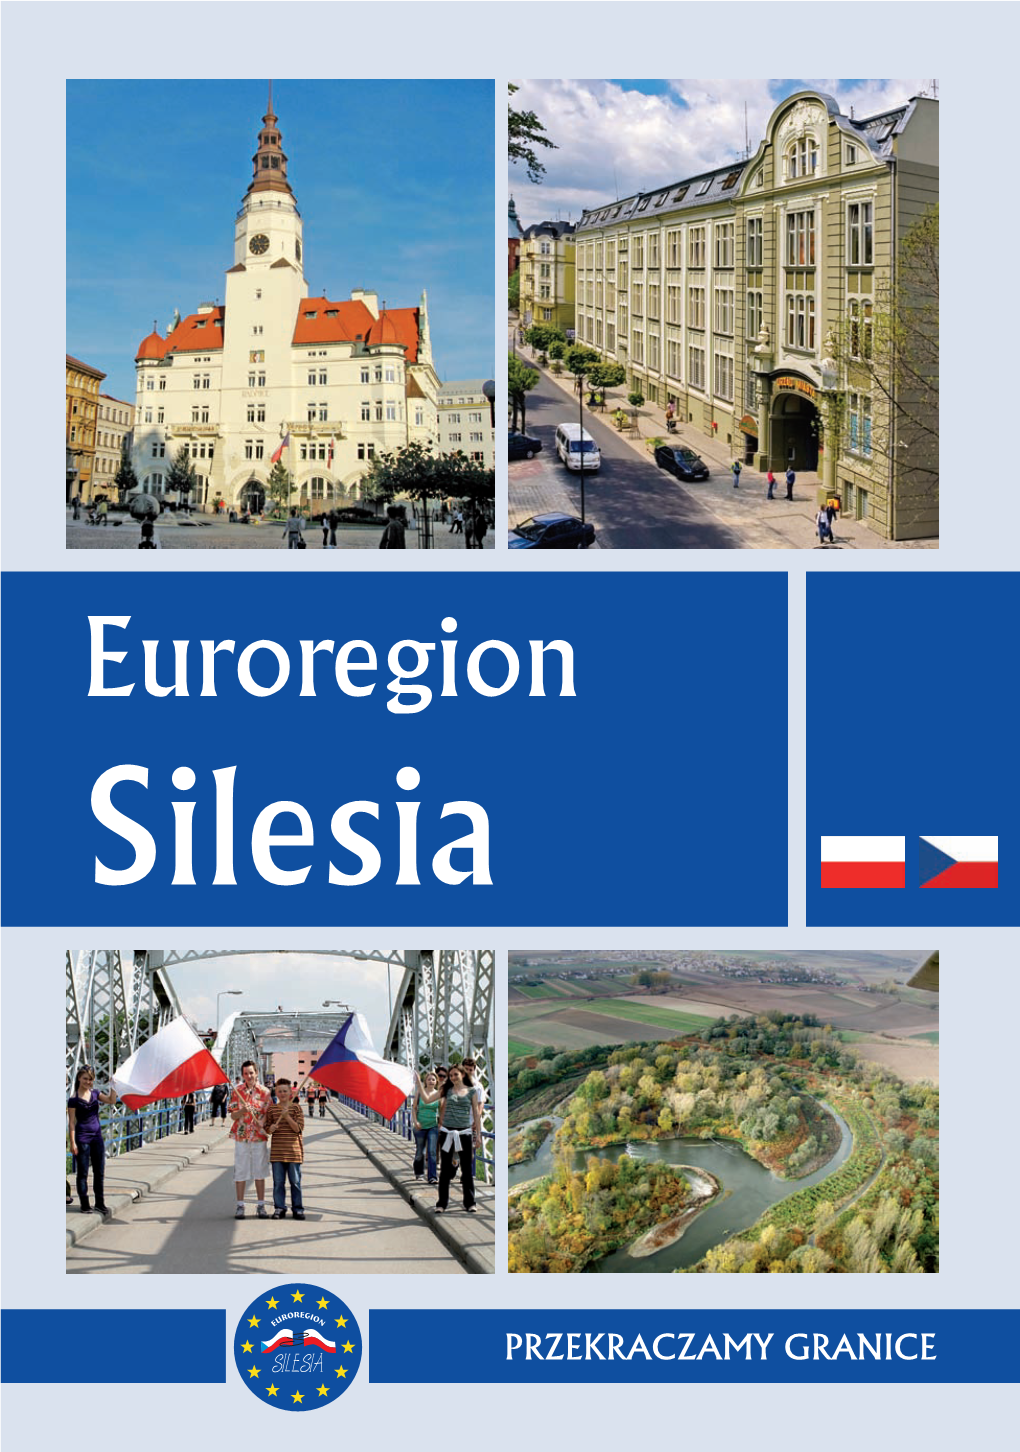 Euroregion Euroregion Silesia